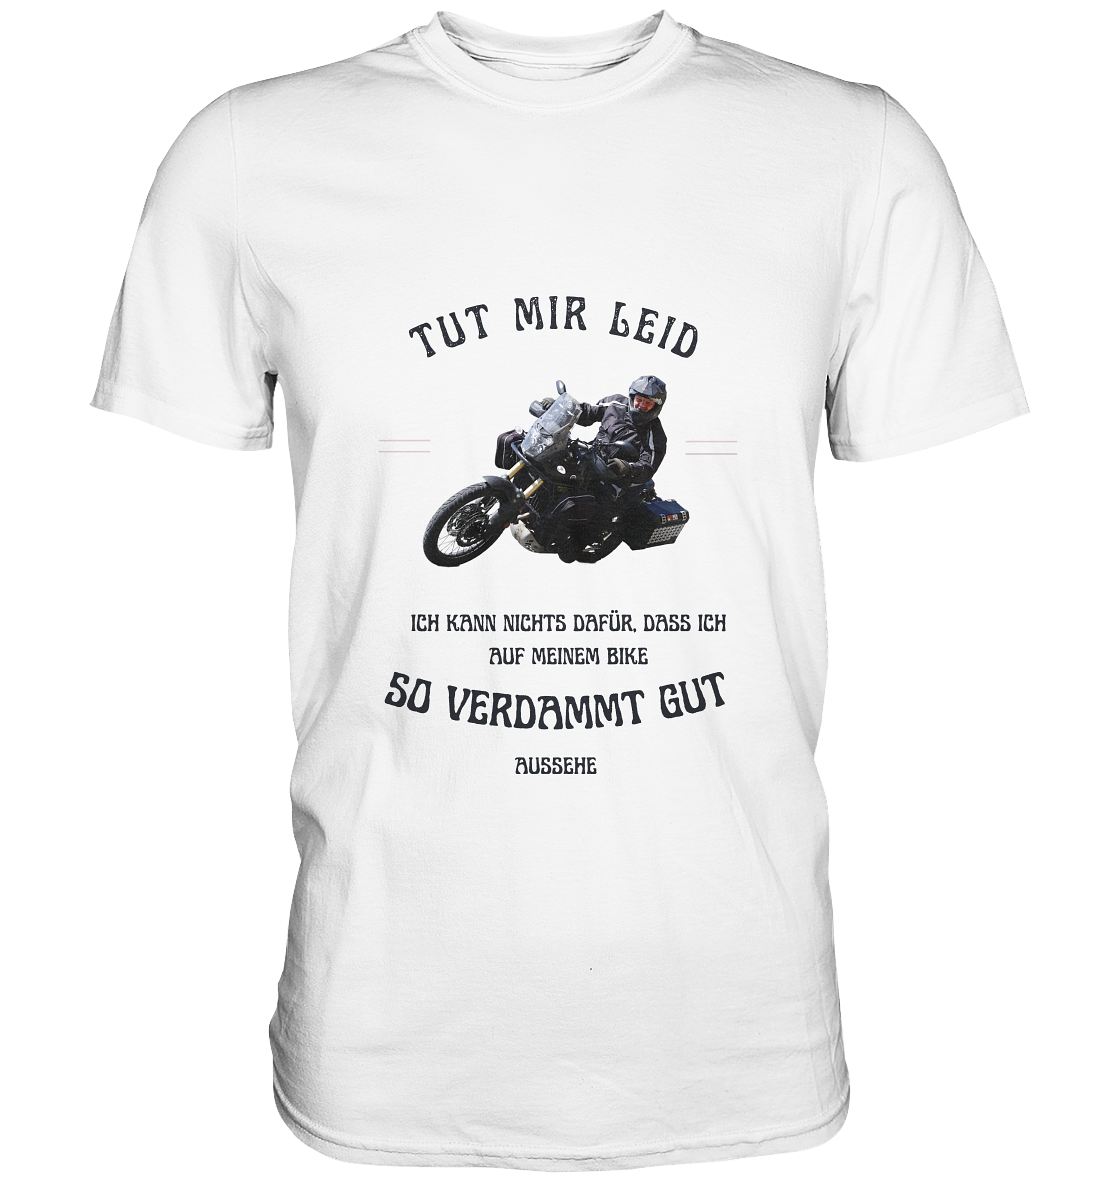 "Tut mir leid, ich kann nichts dafür, dass ich auf meinem Bike so verdammt gut aussehe" _ für Bernd | individualisiertes Shirt mit Foto-Druck + Motorradspruch in dunklem Design